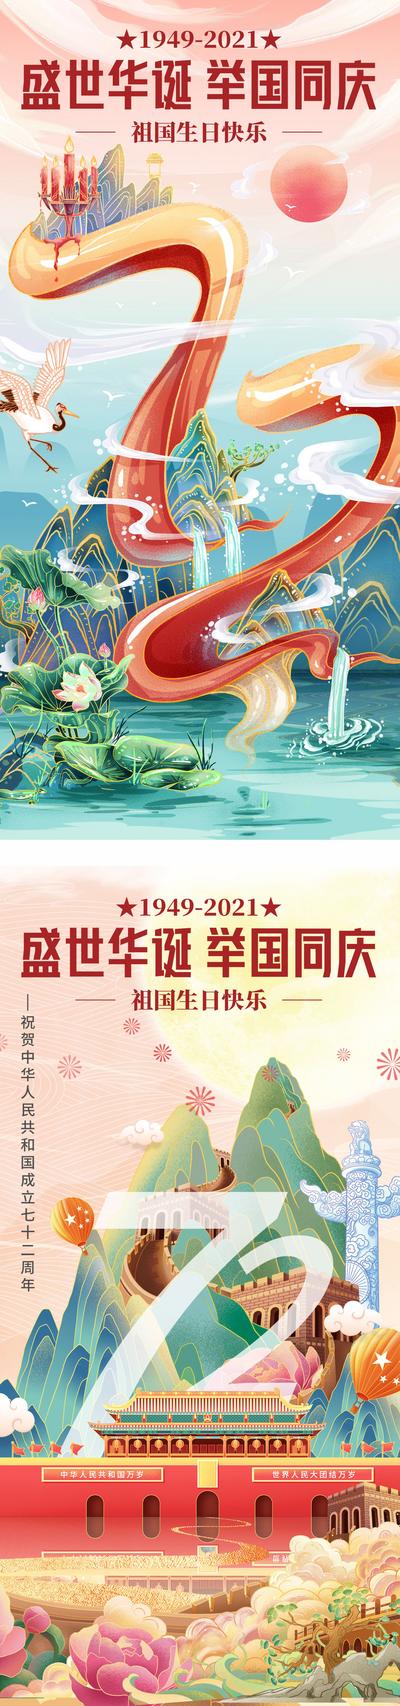 【南门网】广告 海报 节日 国庆 72周年 插画 场景